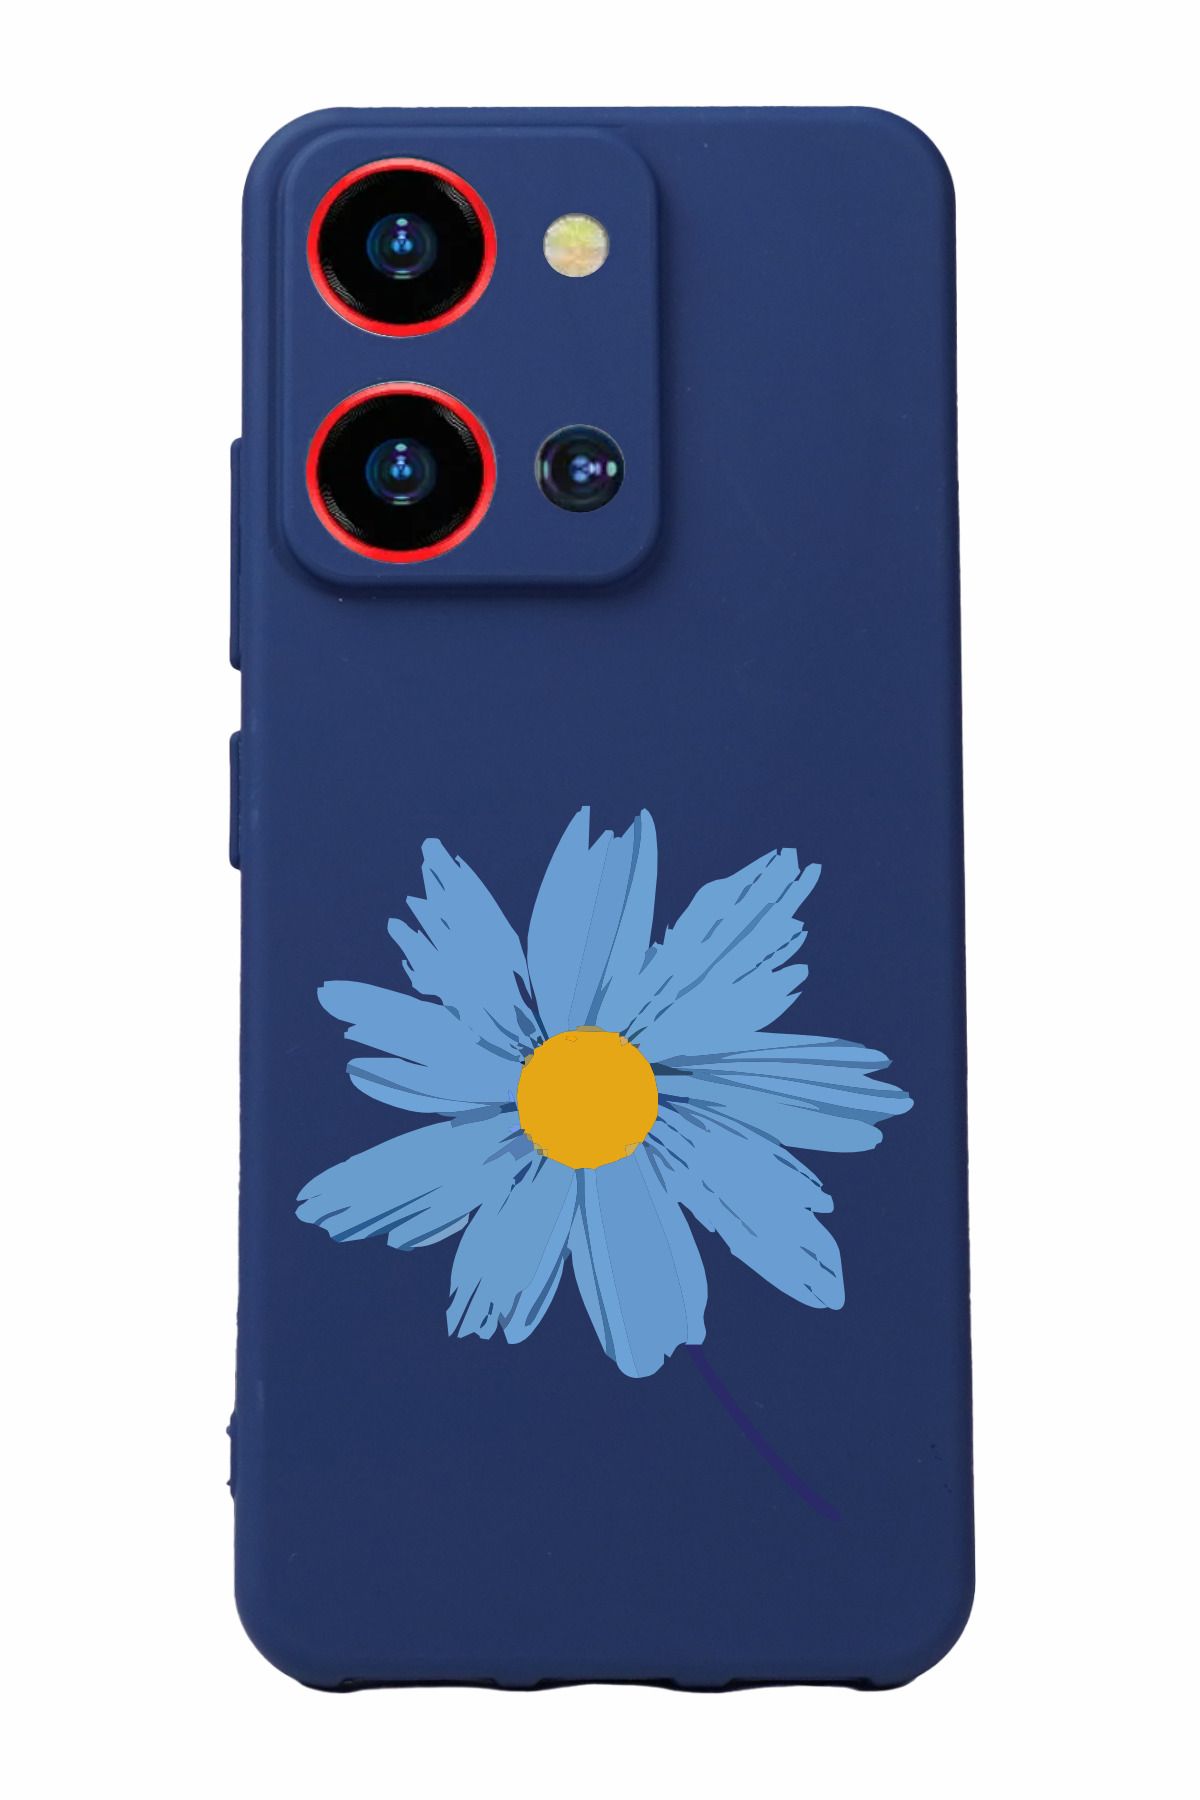 Reeder S19 Max Pro S Zoom Uyumlu Kamera Korumalı ve Tasarımlı Lacivert Renk Silikon Kılıf